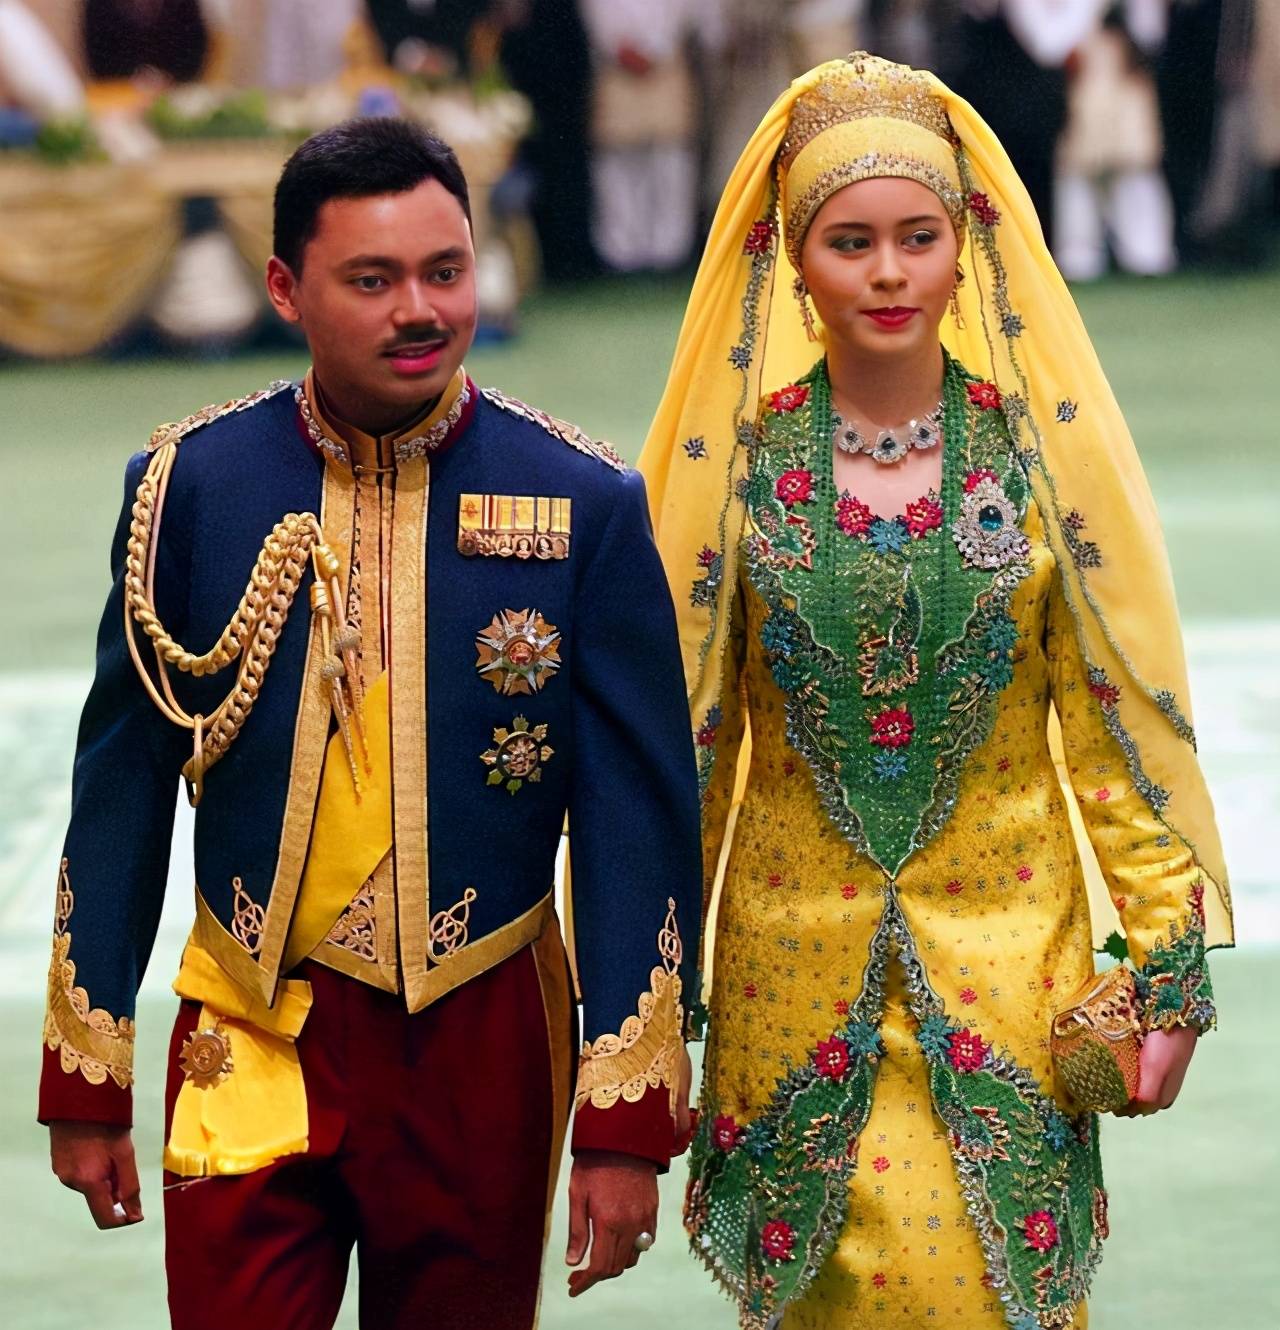 而蓝色也是文莱王室很爱的色系,和王储一起穿上非常正式的传统服饰